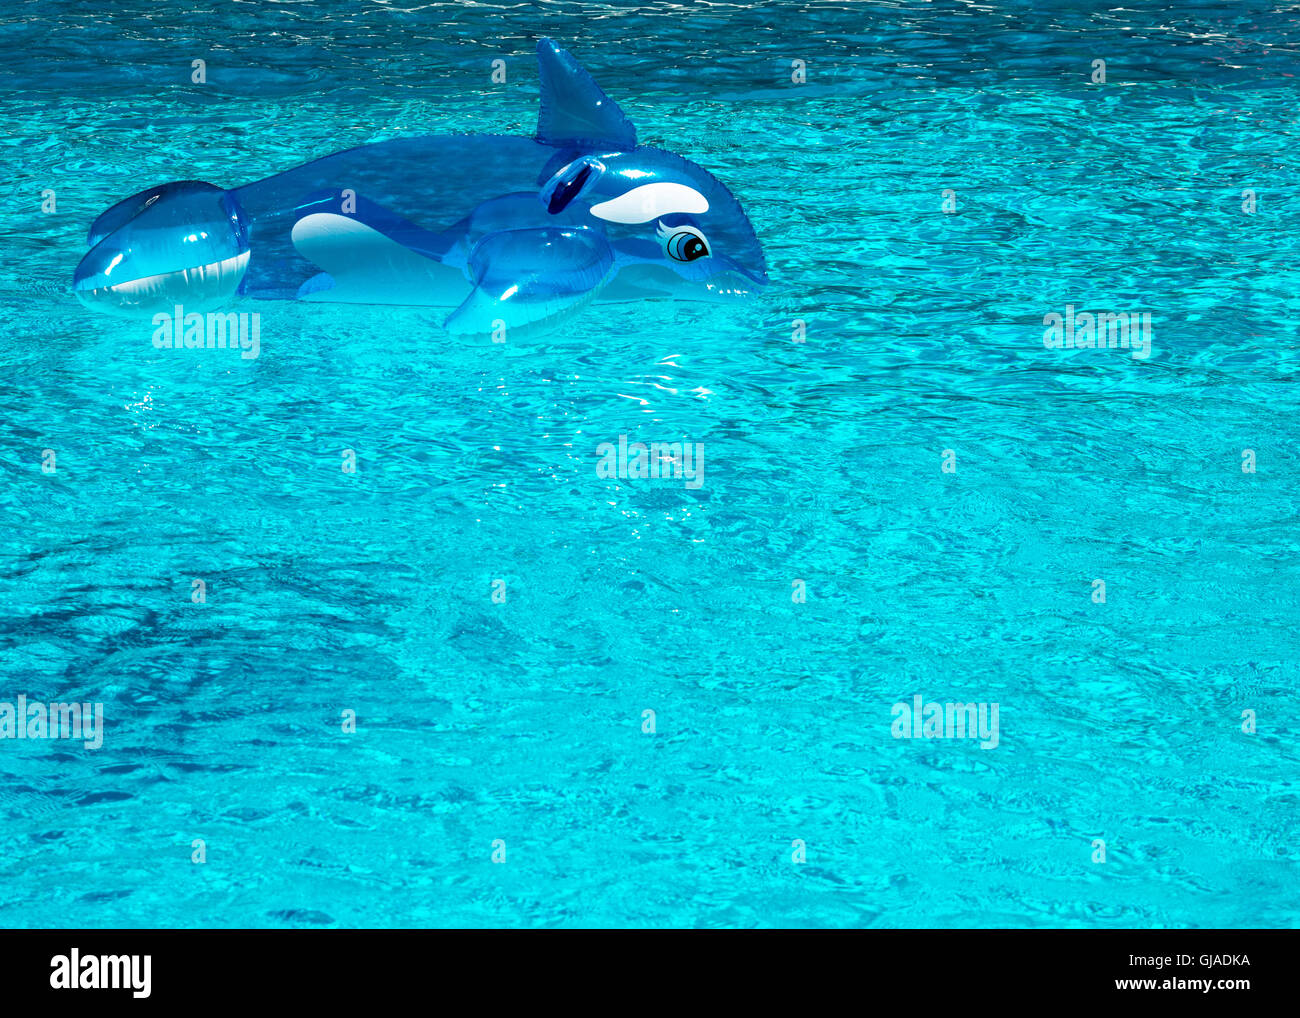 Un dauphin gonflable toy laissé dans une piscine place pour le texte ou copiez espacés Banque D'Images